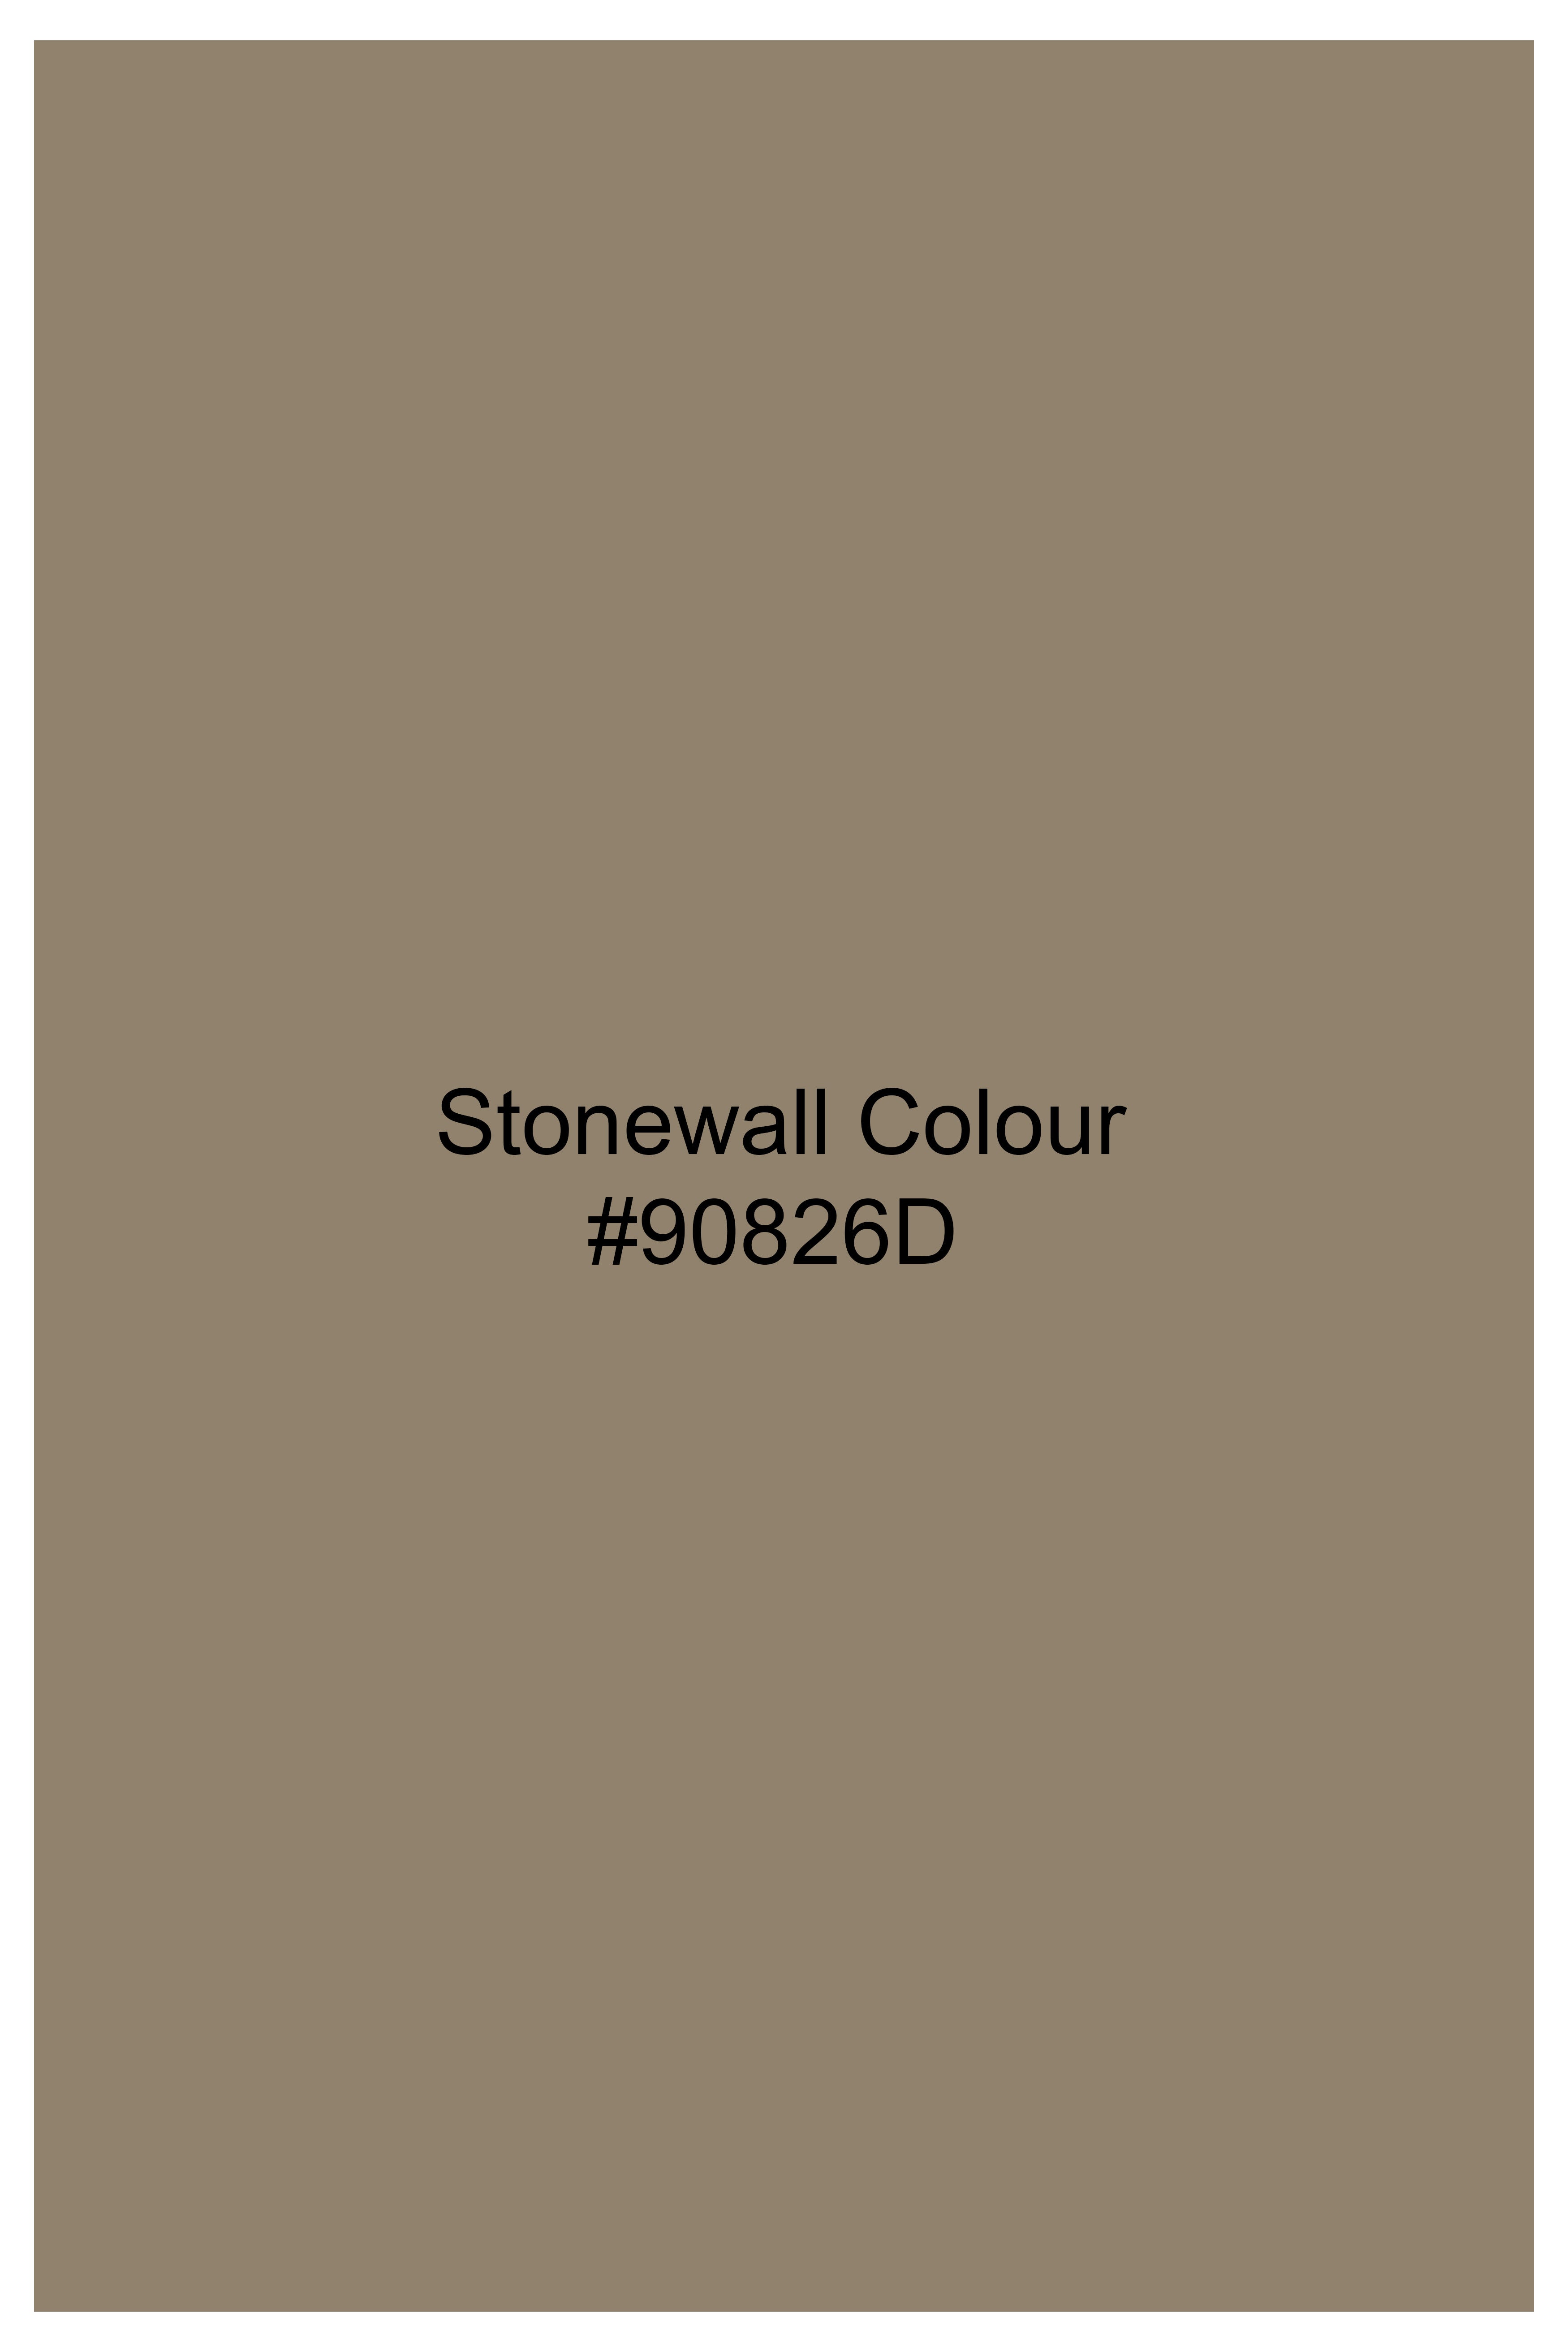 Stonewall Brown Wool Rich Waistcoat V3044-36, V3044-38, V3044-40, V3044-42, V3044-44, V3044-46, V3044-48, V3044-50, V3044-44, V3044-54, V3044-56, V3044-58, V3044-60